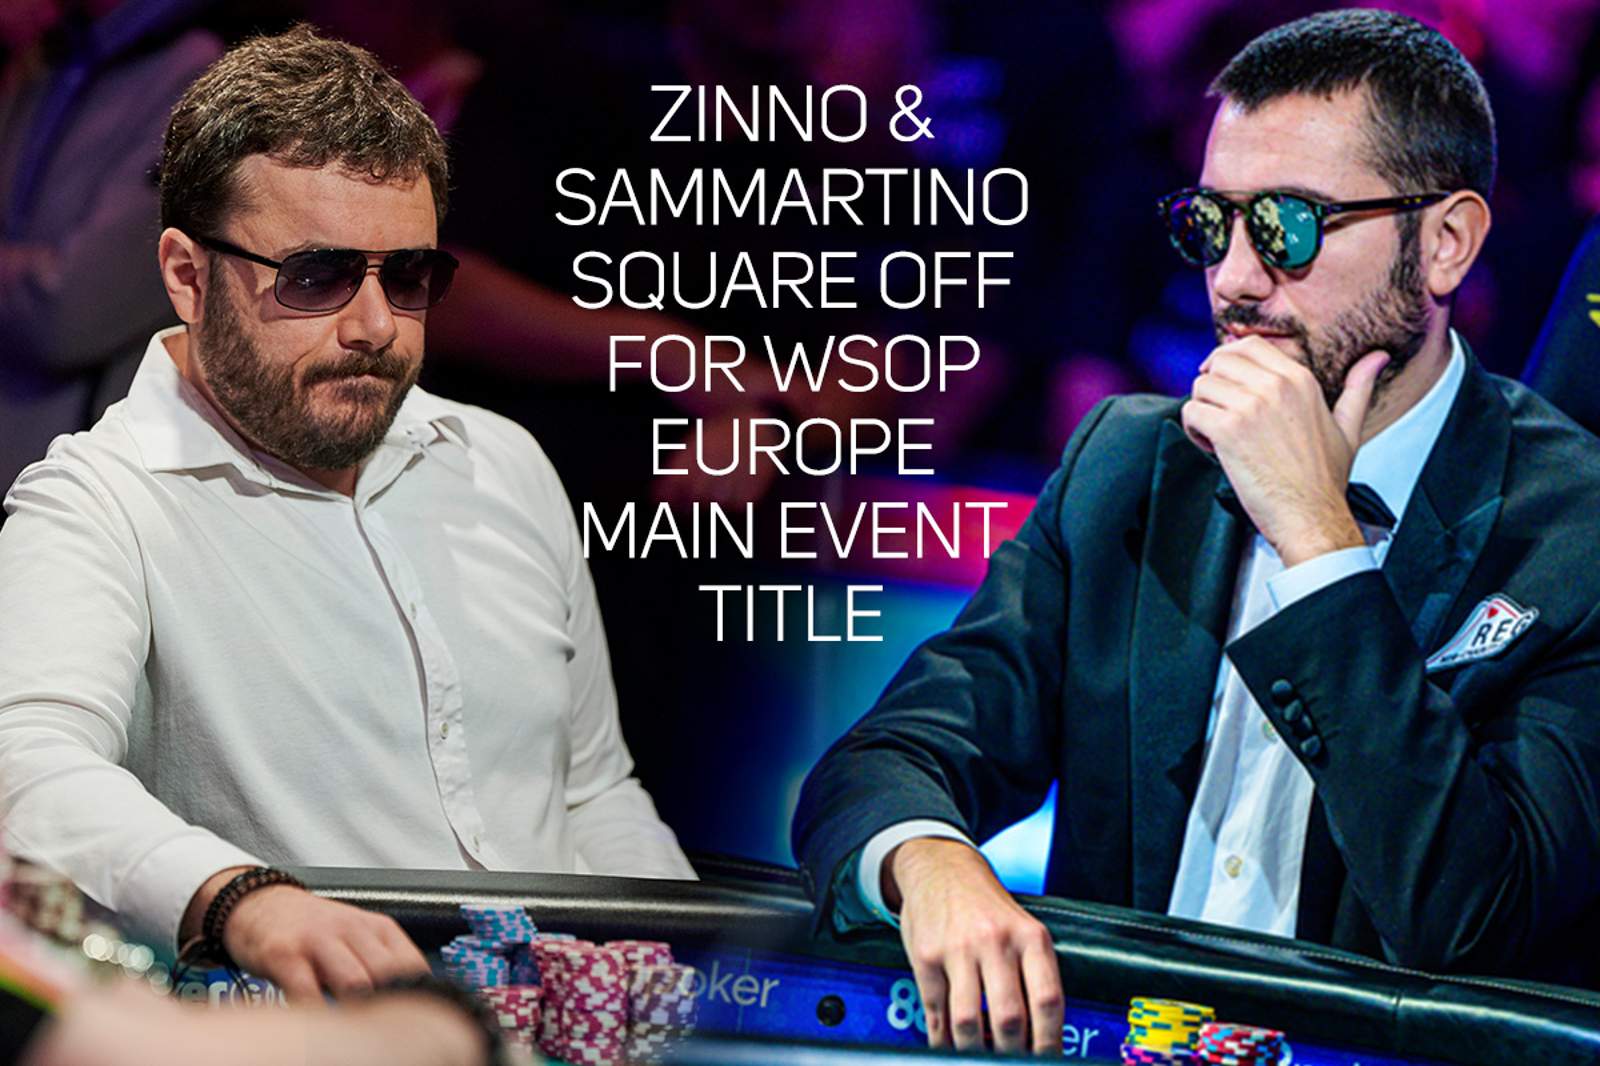 Zinno & Sammartino Square Off for WSOP Europe Main Event Title